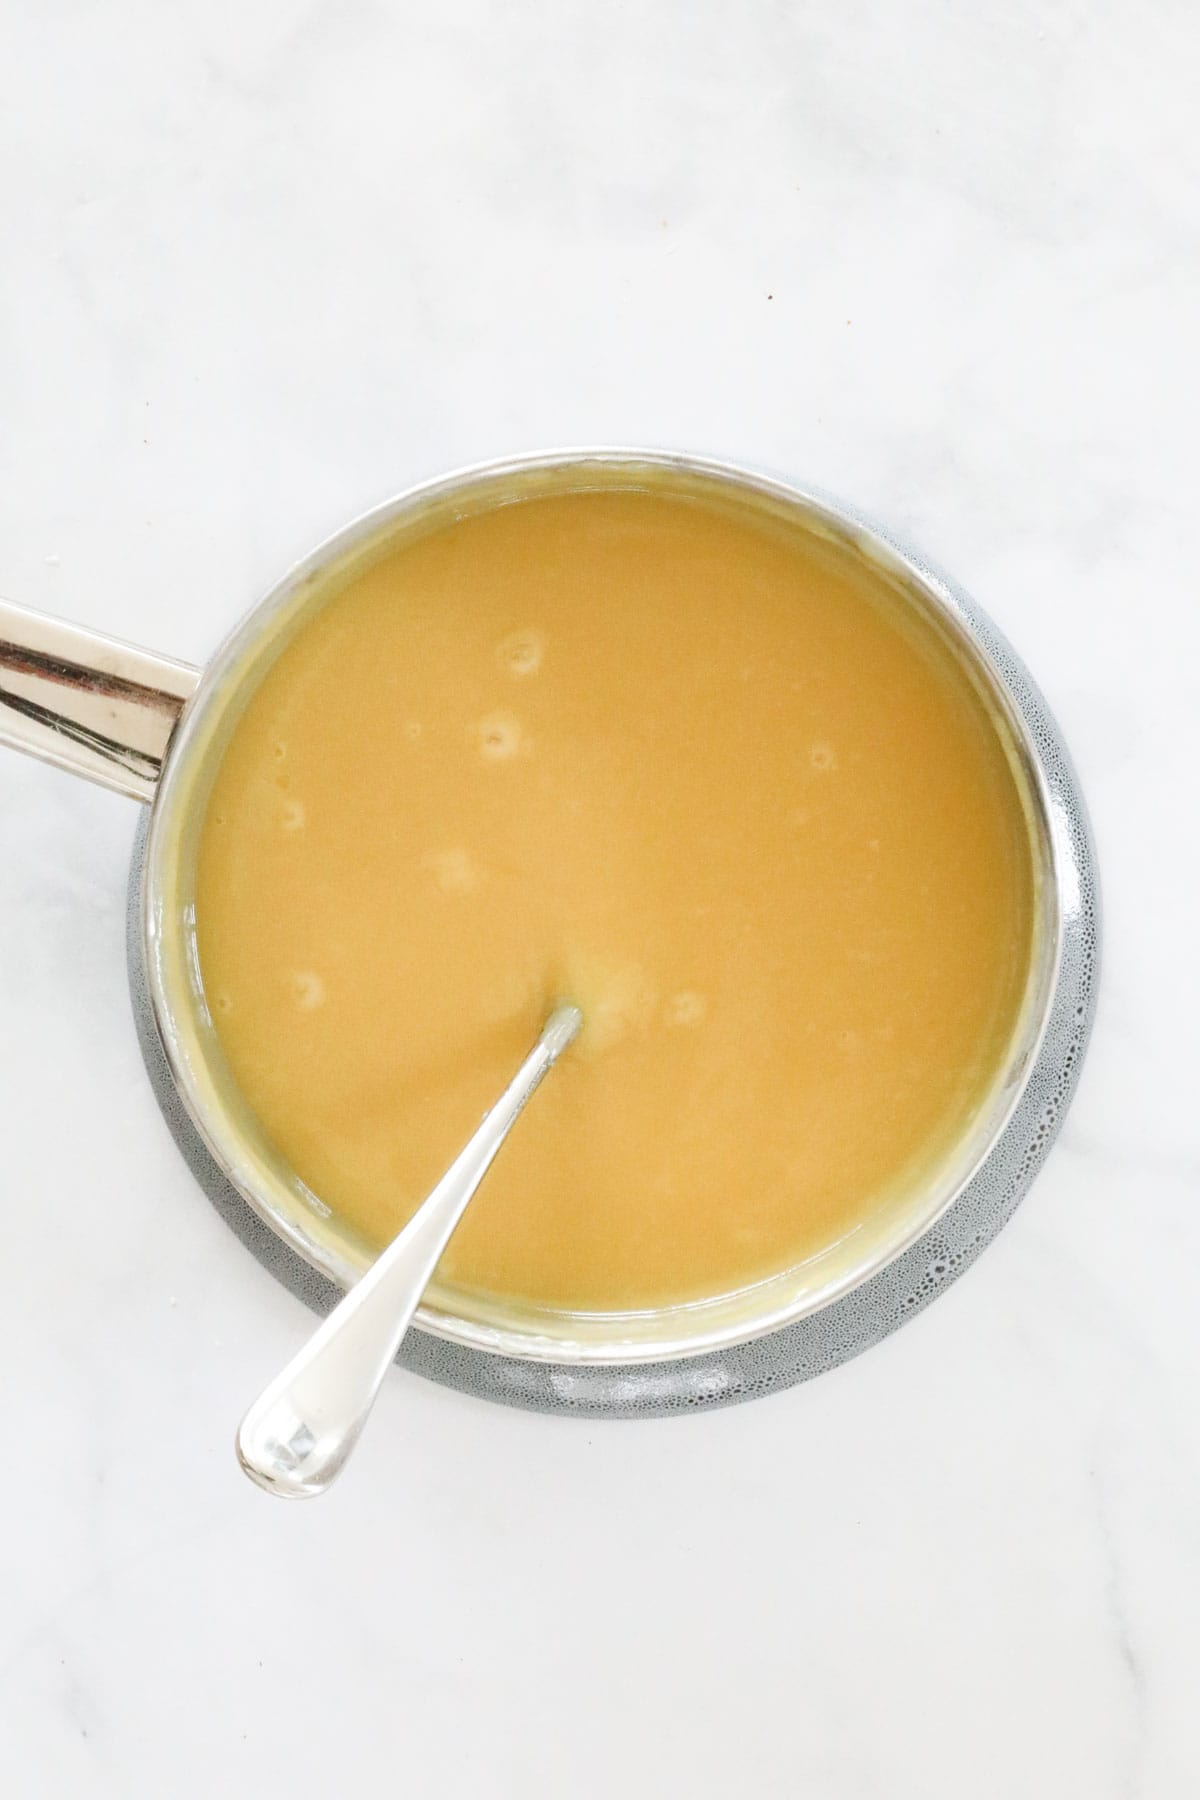 Caramel filling in a saucepan.